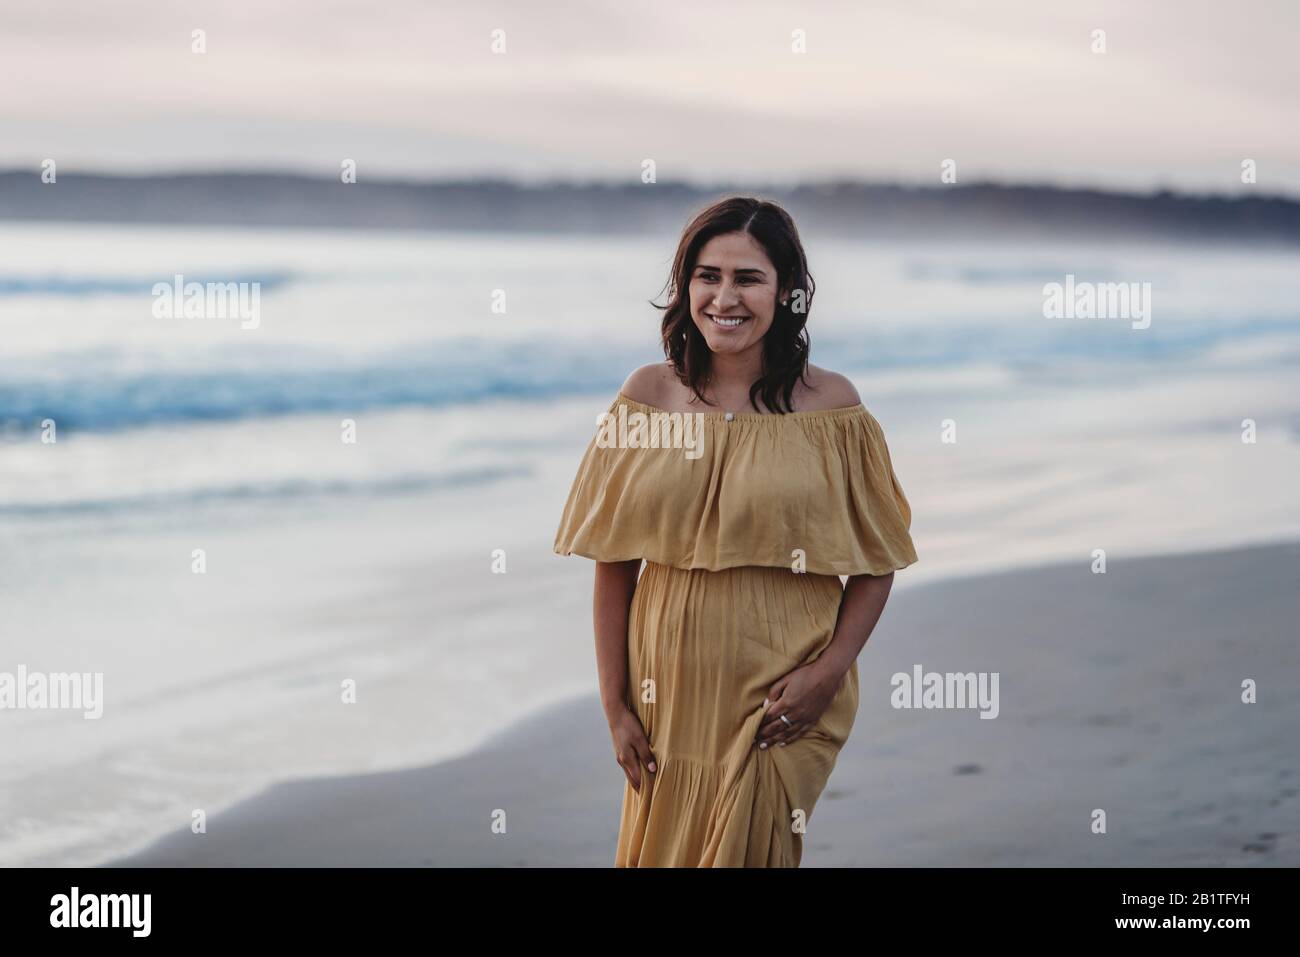 Ritratto lifestyle di giovane donna che cammina sulla spiaggia contro il cielo nuvoloso Foto Stock